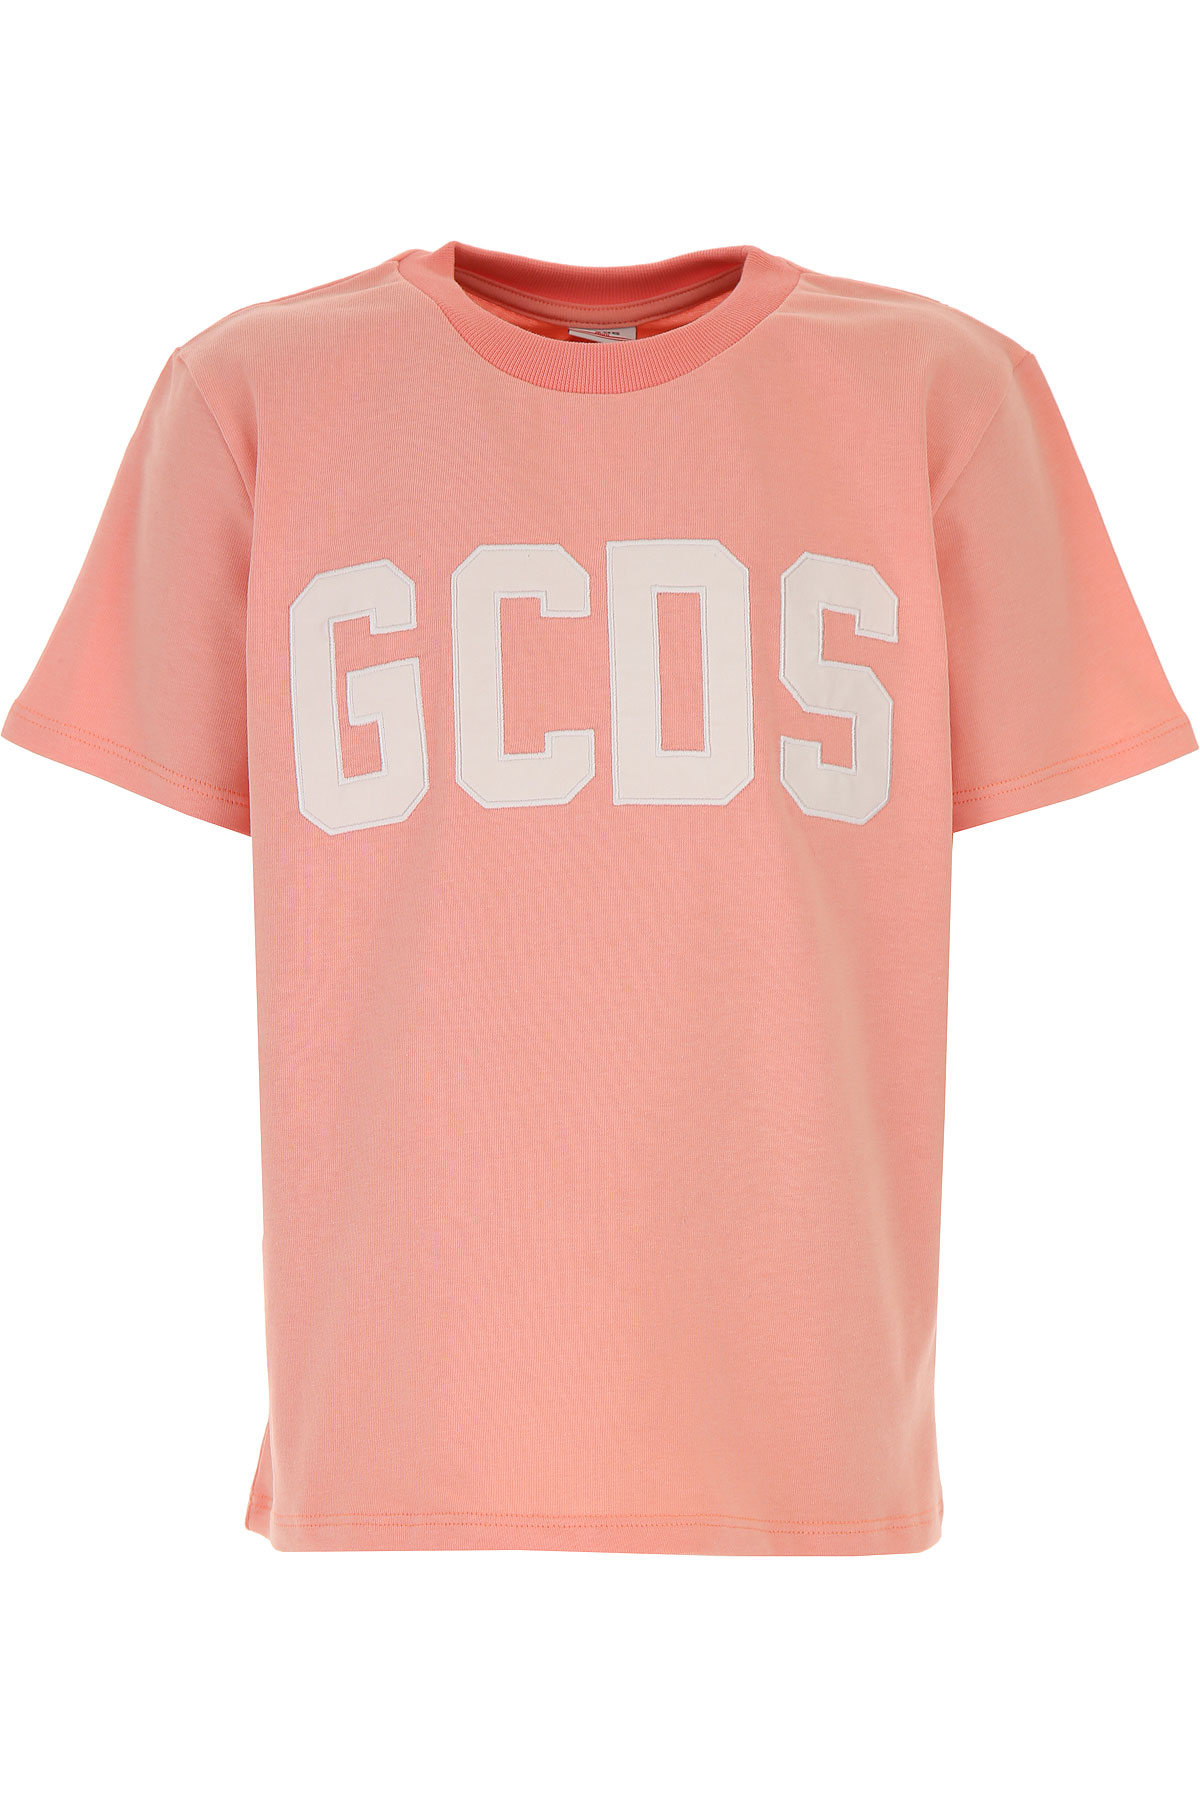 GCDS Kinder T-Shirt für Mädchen Günstig im Sale, Pink, Baumwolle, 2017, 10Y 12Y 14Y 8Y